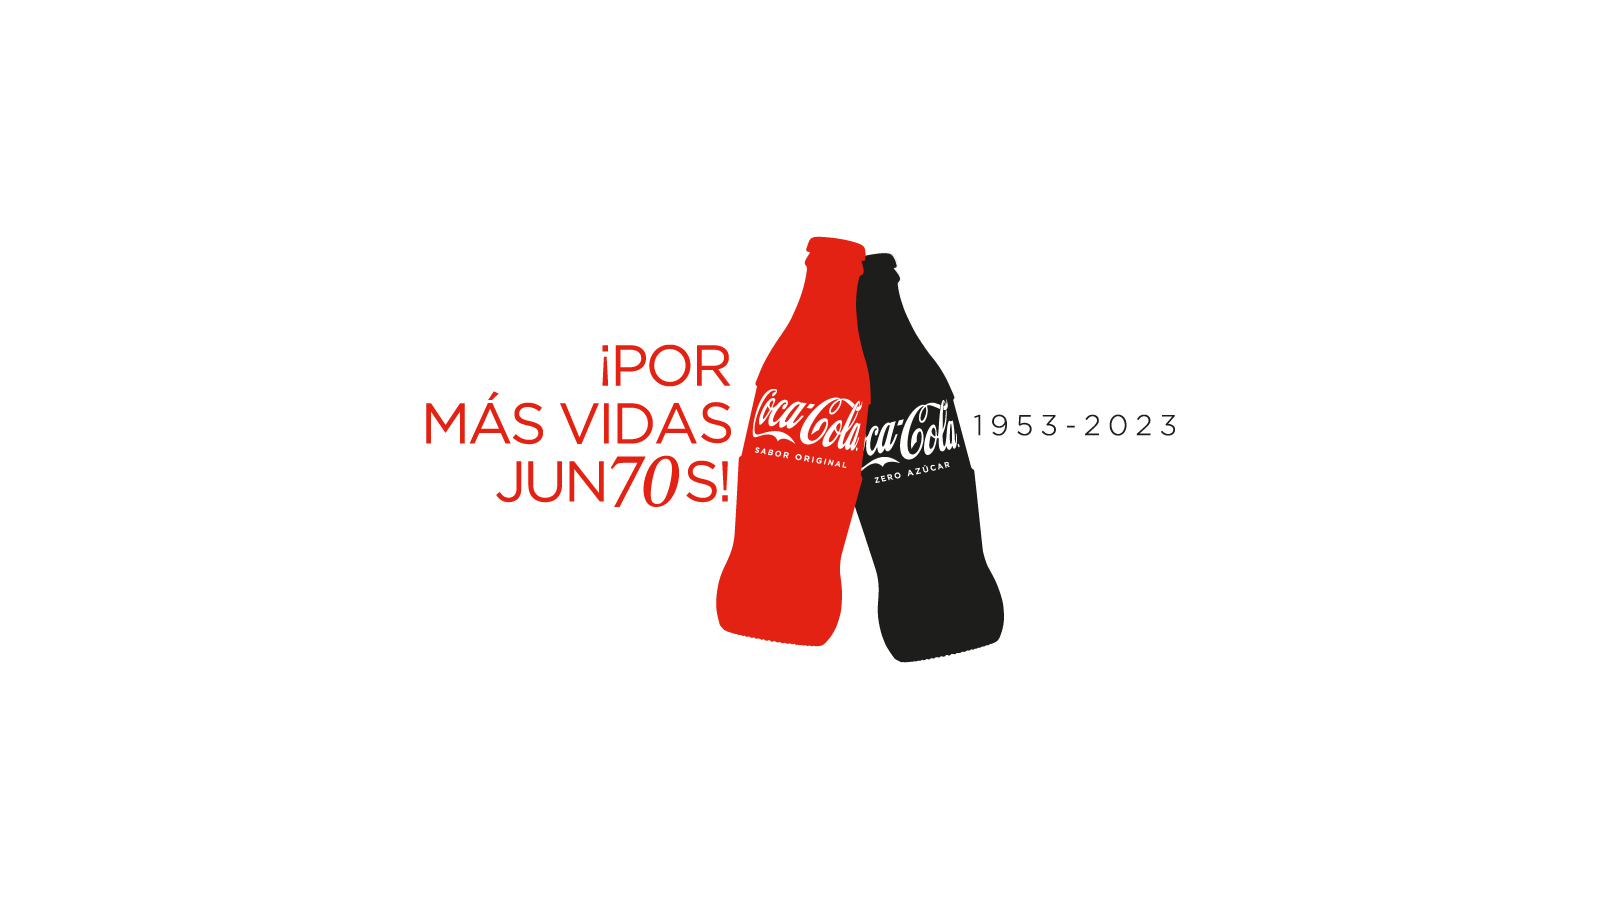 Botellas de Coca-Cola roja y negra sobre fondo blanco con texto